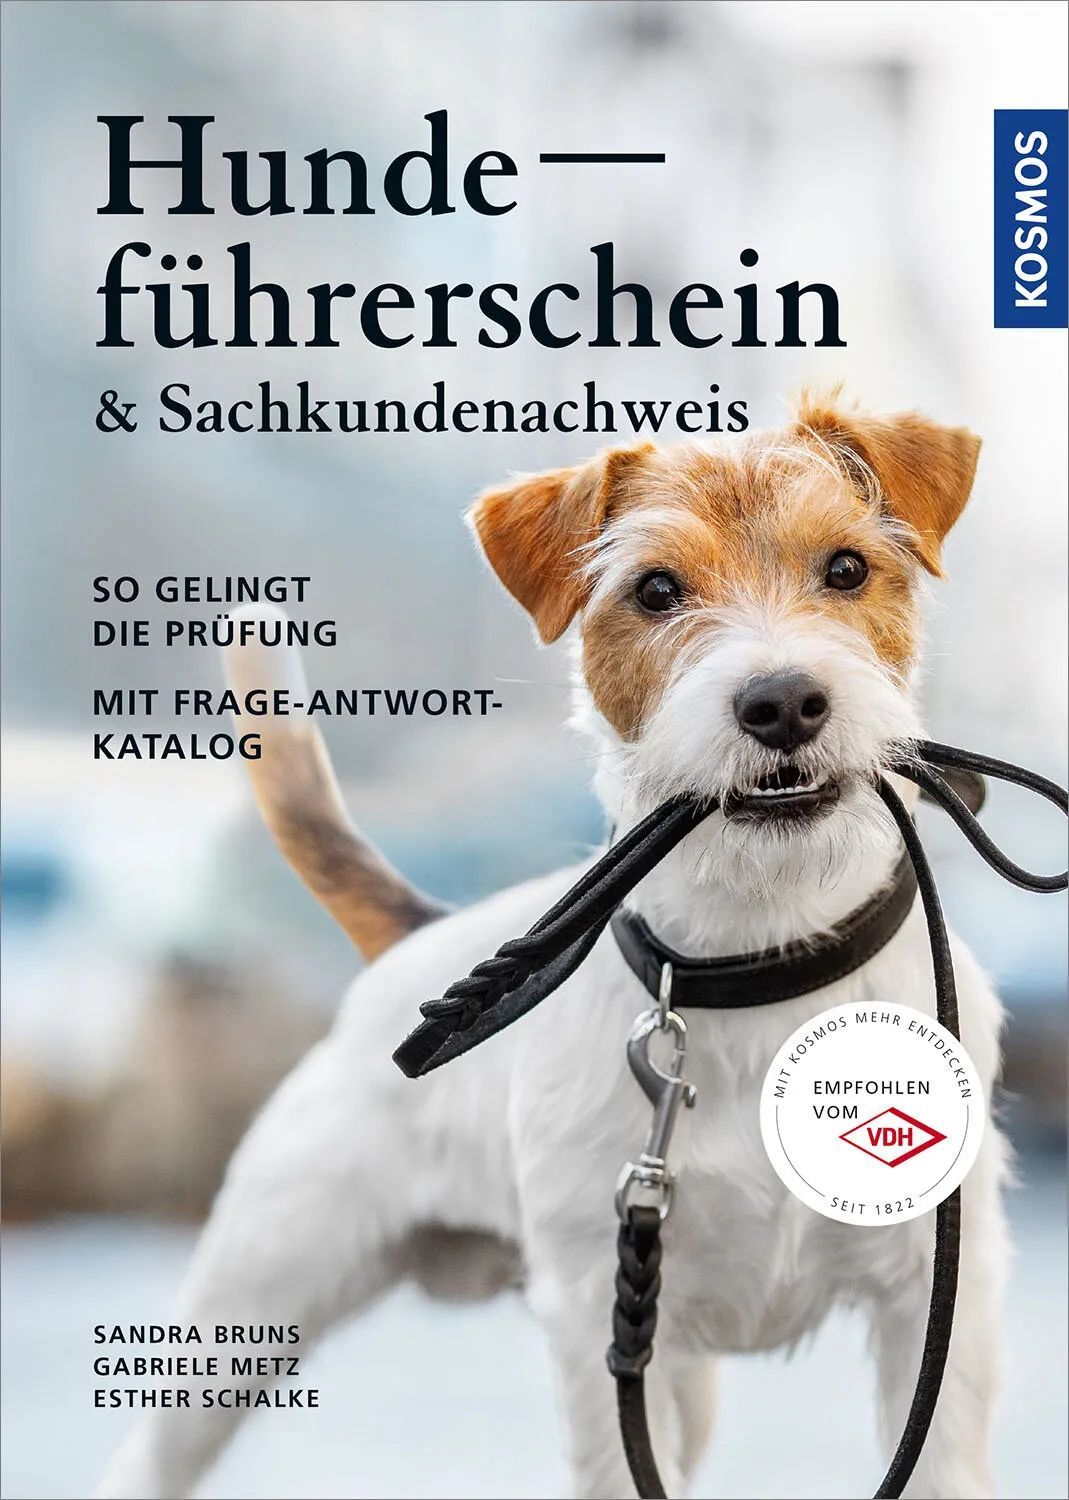 〓 在德国，养狗需要进行考试，取得执照